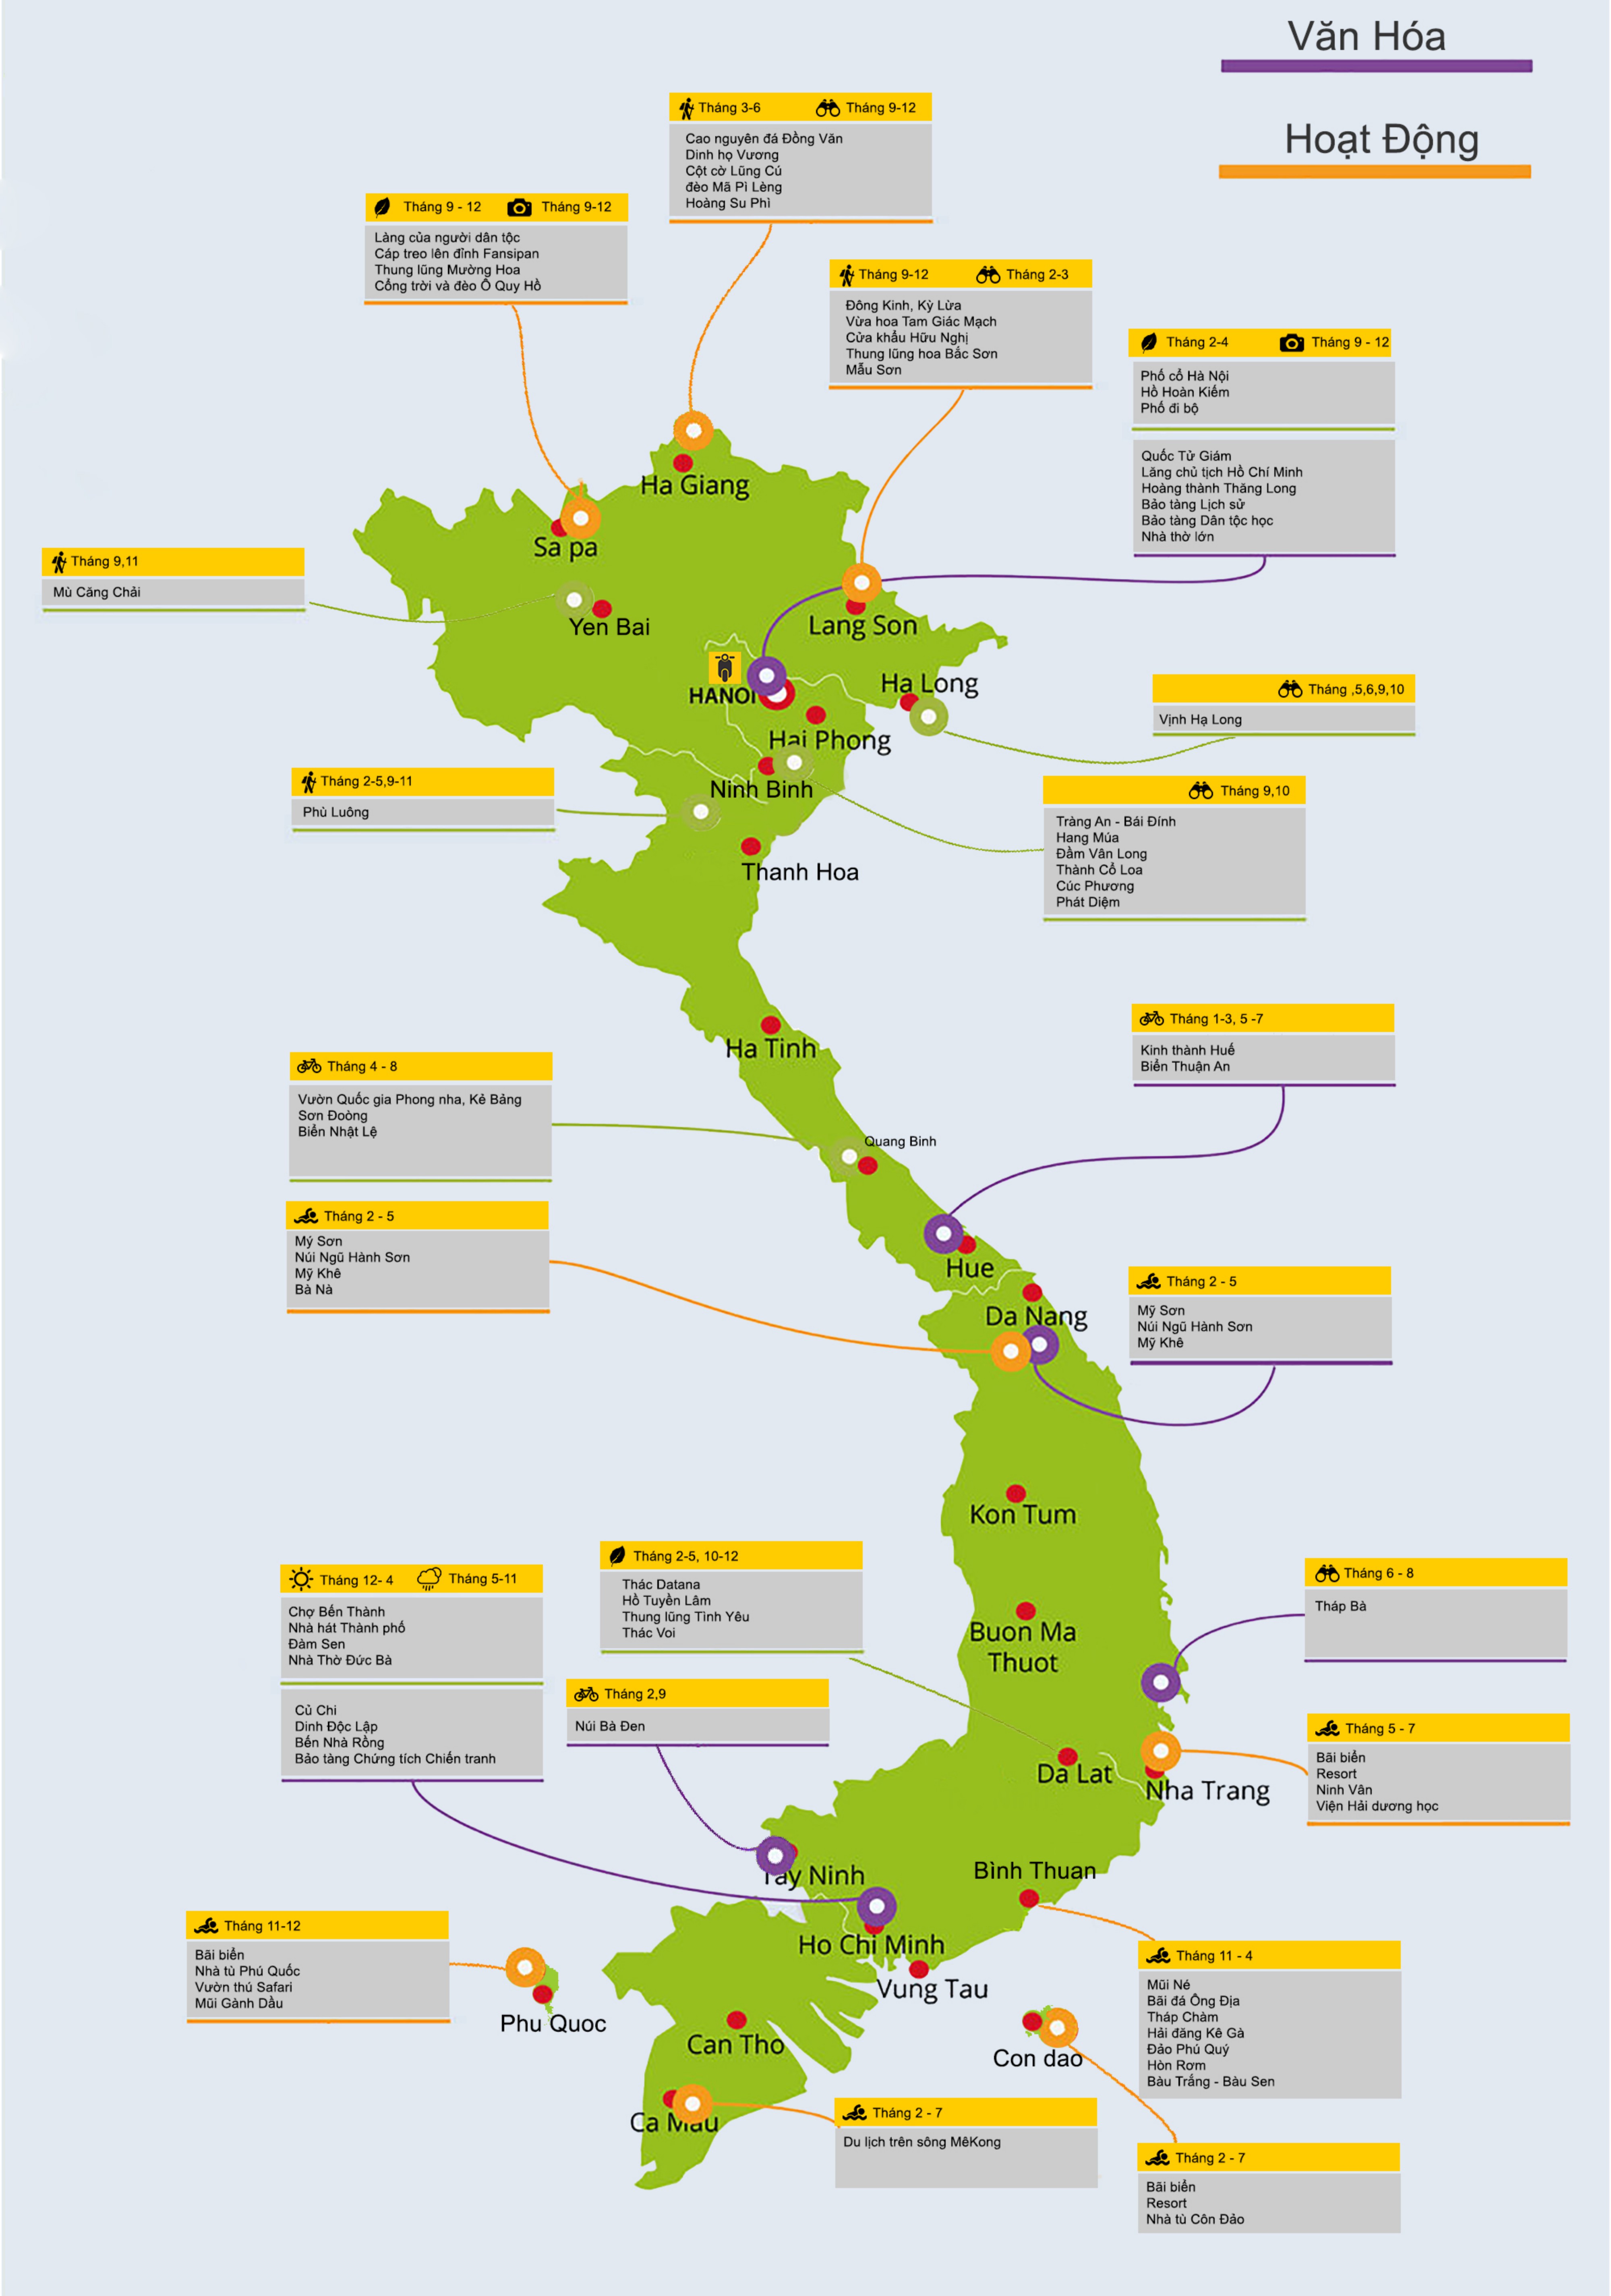 Bản đồ hành chính tỉnh Việt Nam năm 2024 đã được cập nhật mới nhất với đa dạng và chi tiết nhất về cấu trúc chính quyền địa phương trên khắp đất nước. Từ TP.HCM đến Sapa, bạn sẽ dễ dàng tìm kiếm thông tin về các tỉnh thành cùng những điểm đến du lịch thú vị và độc đáo tại đây.